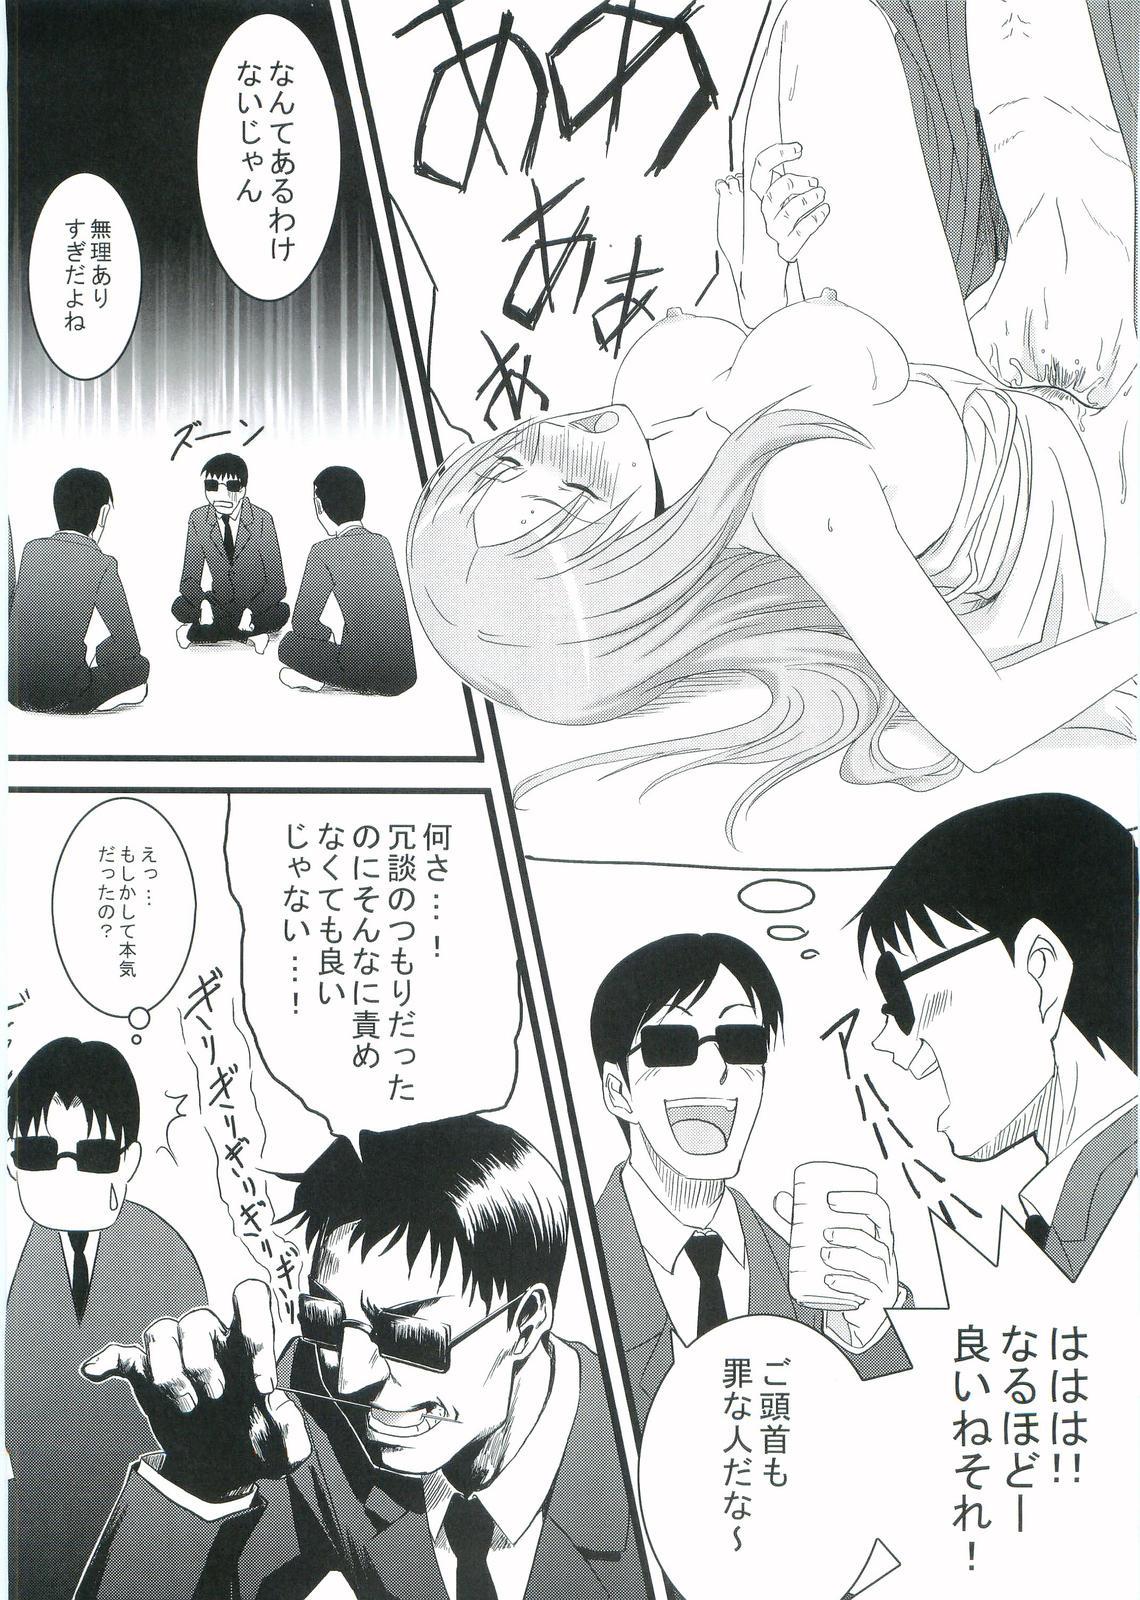 Boobies Kouhukuya no Ehon Gokujo 2 - Gokujou seitokai Mistress - Page 7